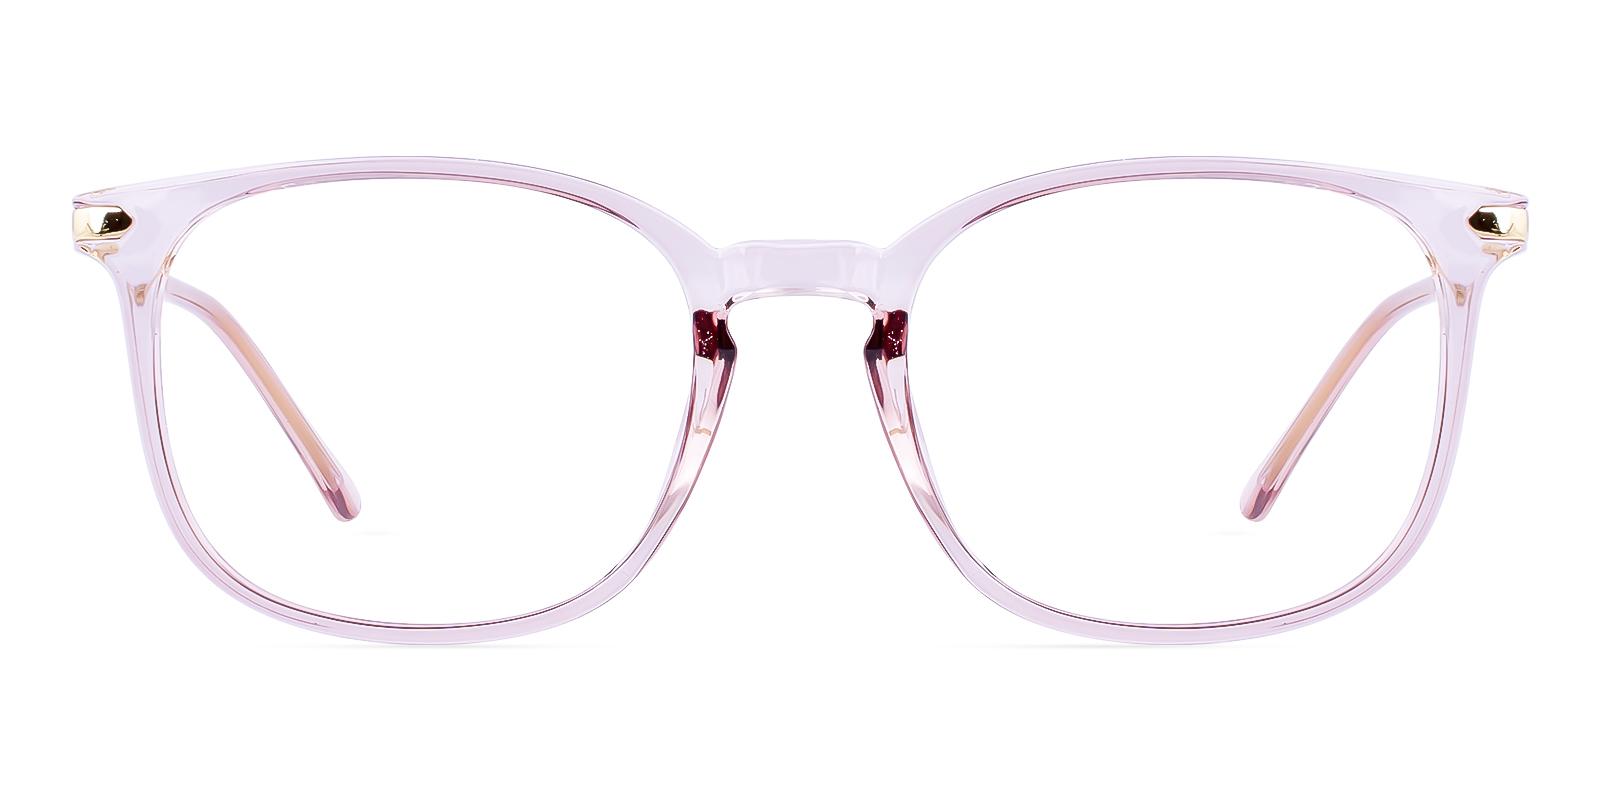 Mercier Pink Plastic Eyeglasses , UniversalBridgeFit Frames from ABBE Glasses